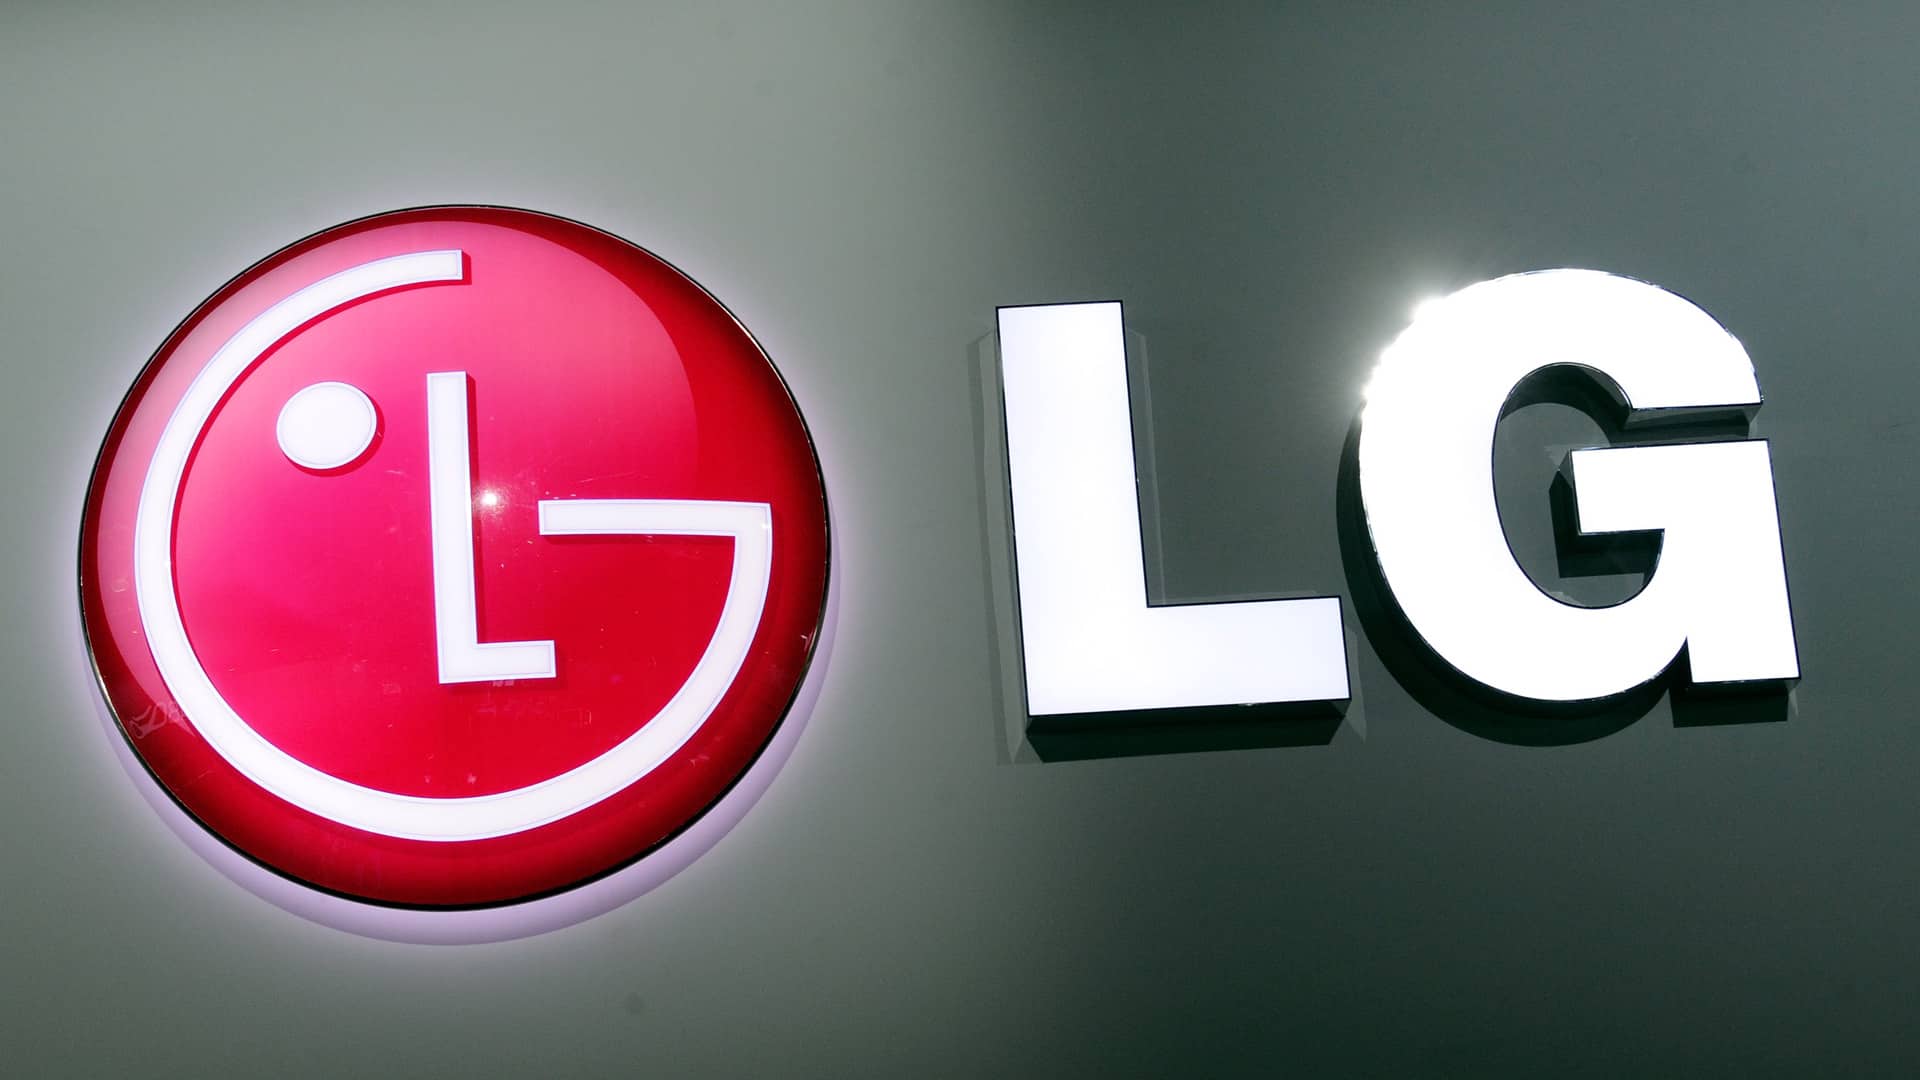 LG-LOGOS